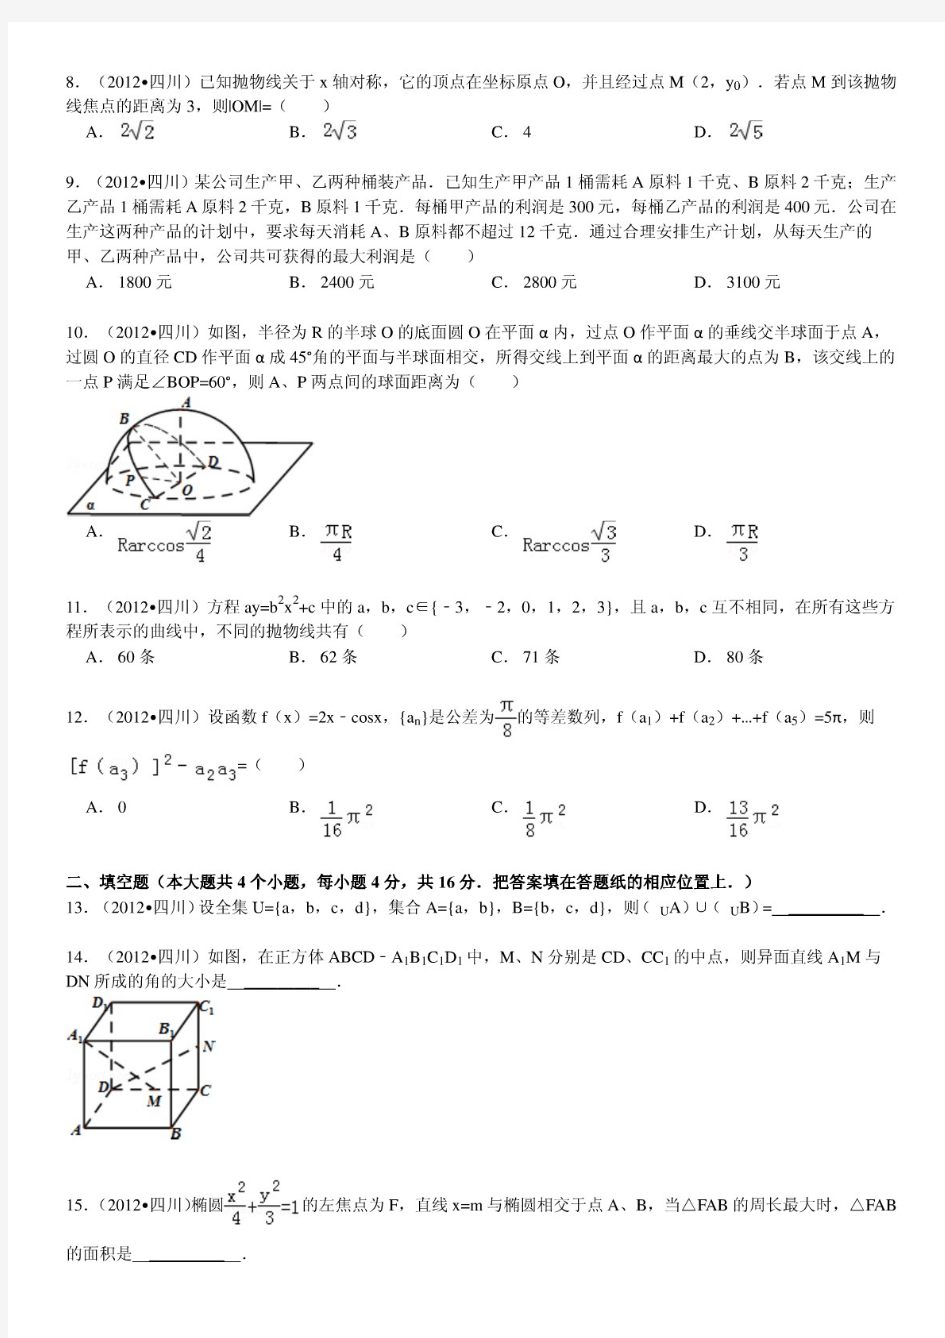 2012年四川省高考数学试卷(理科)及解析